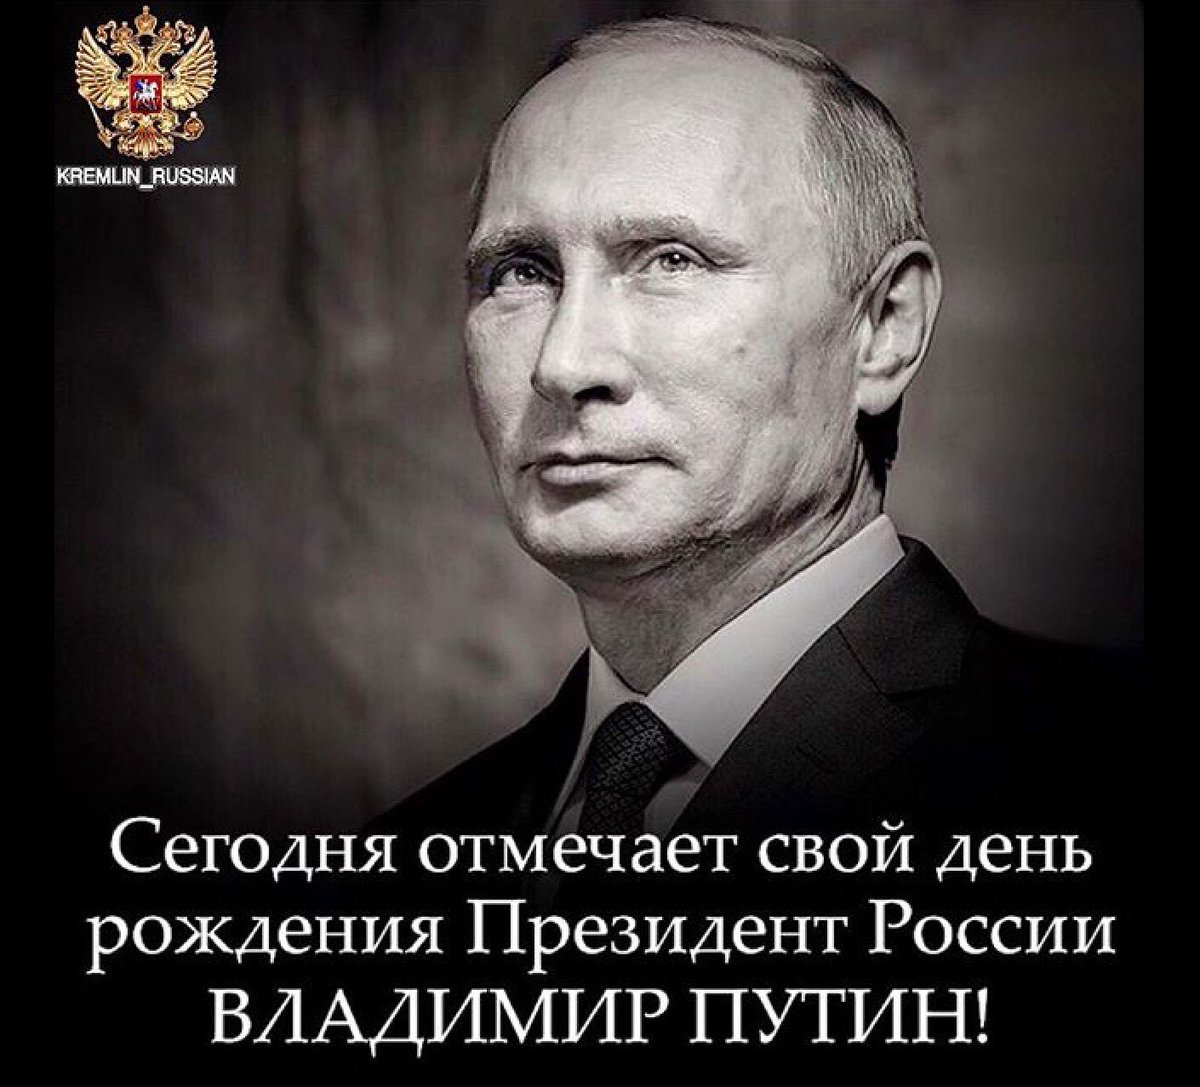 Поздравление Путина Картинки